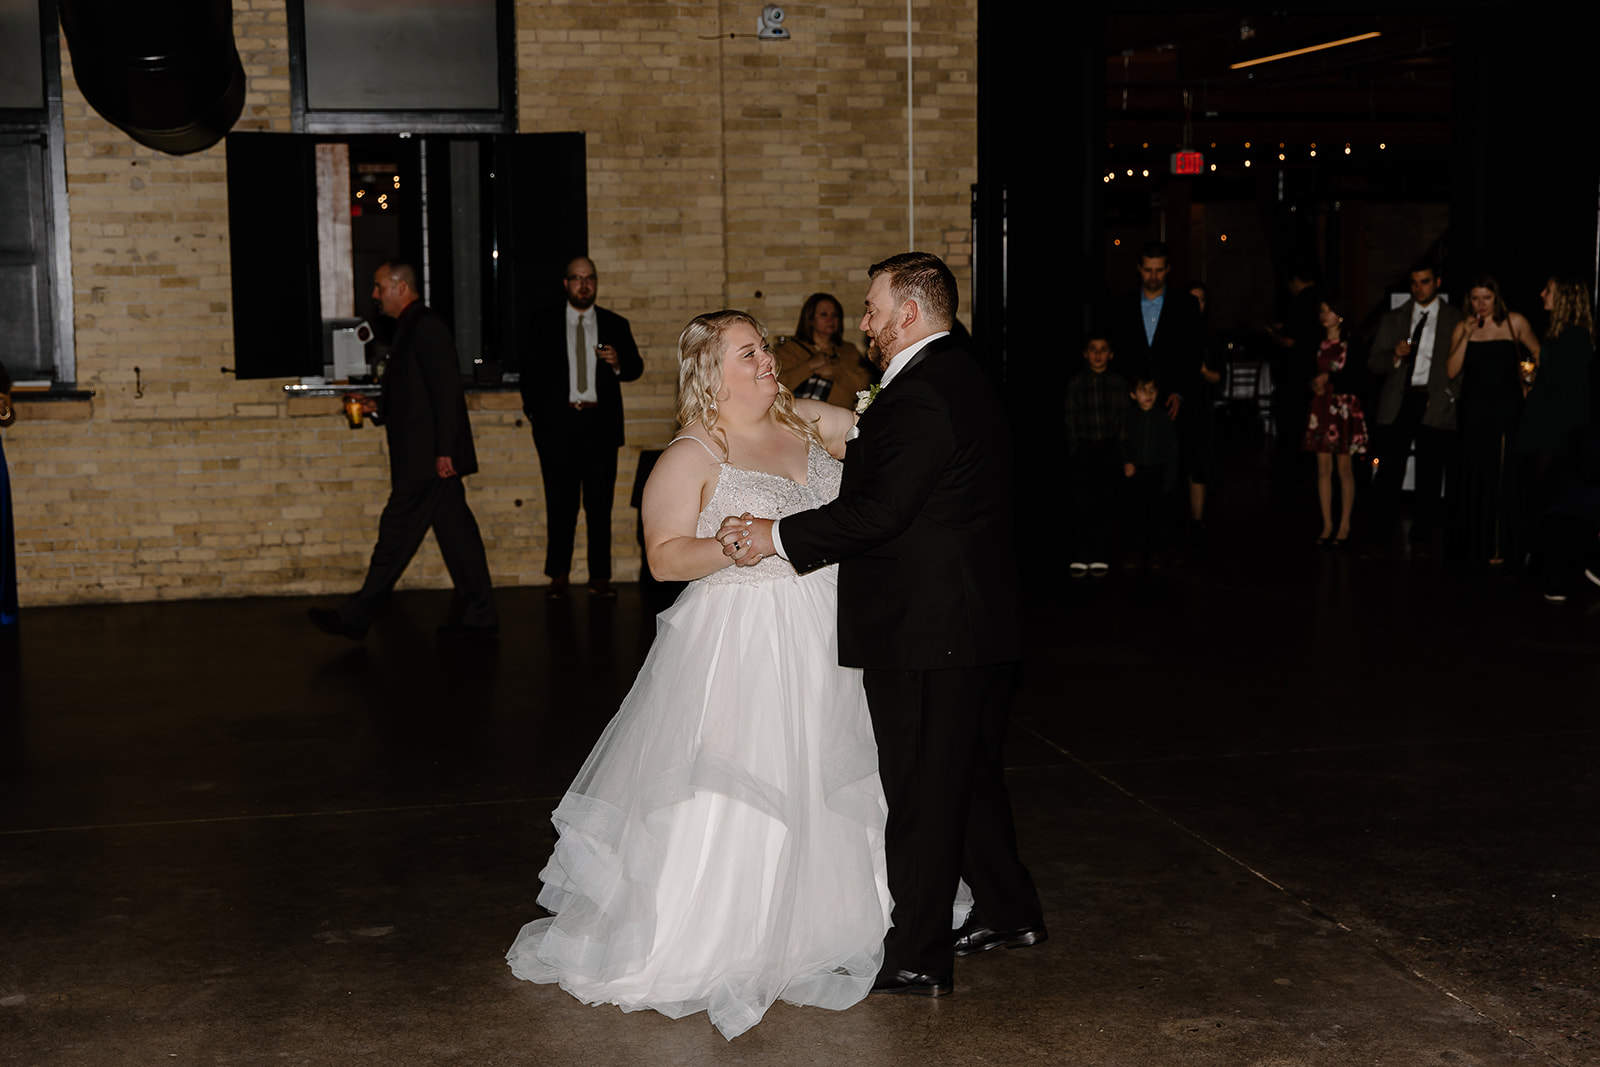 Bride and groom dance on the dance floor